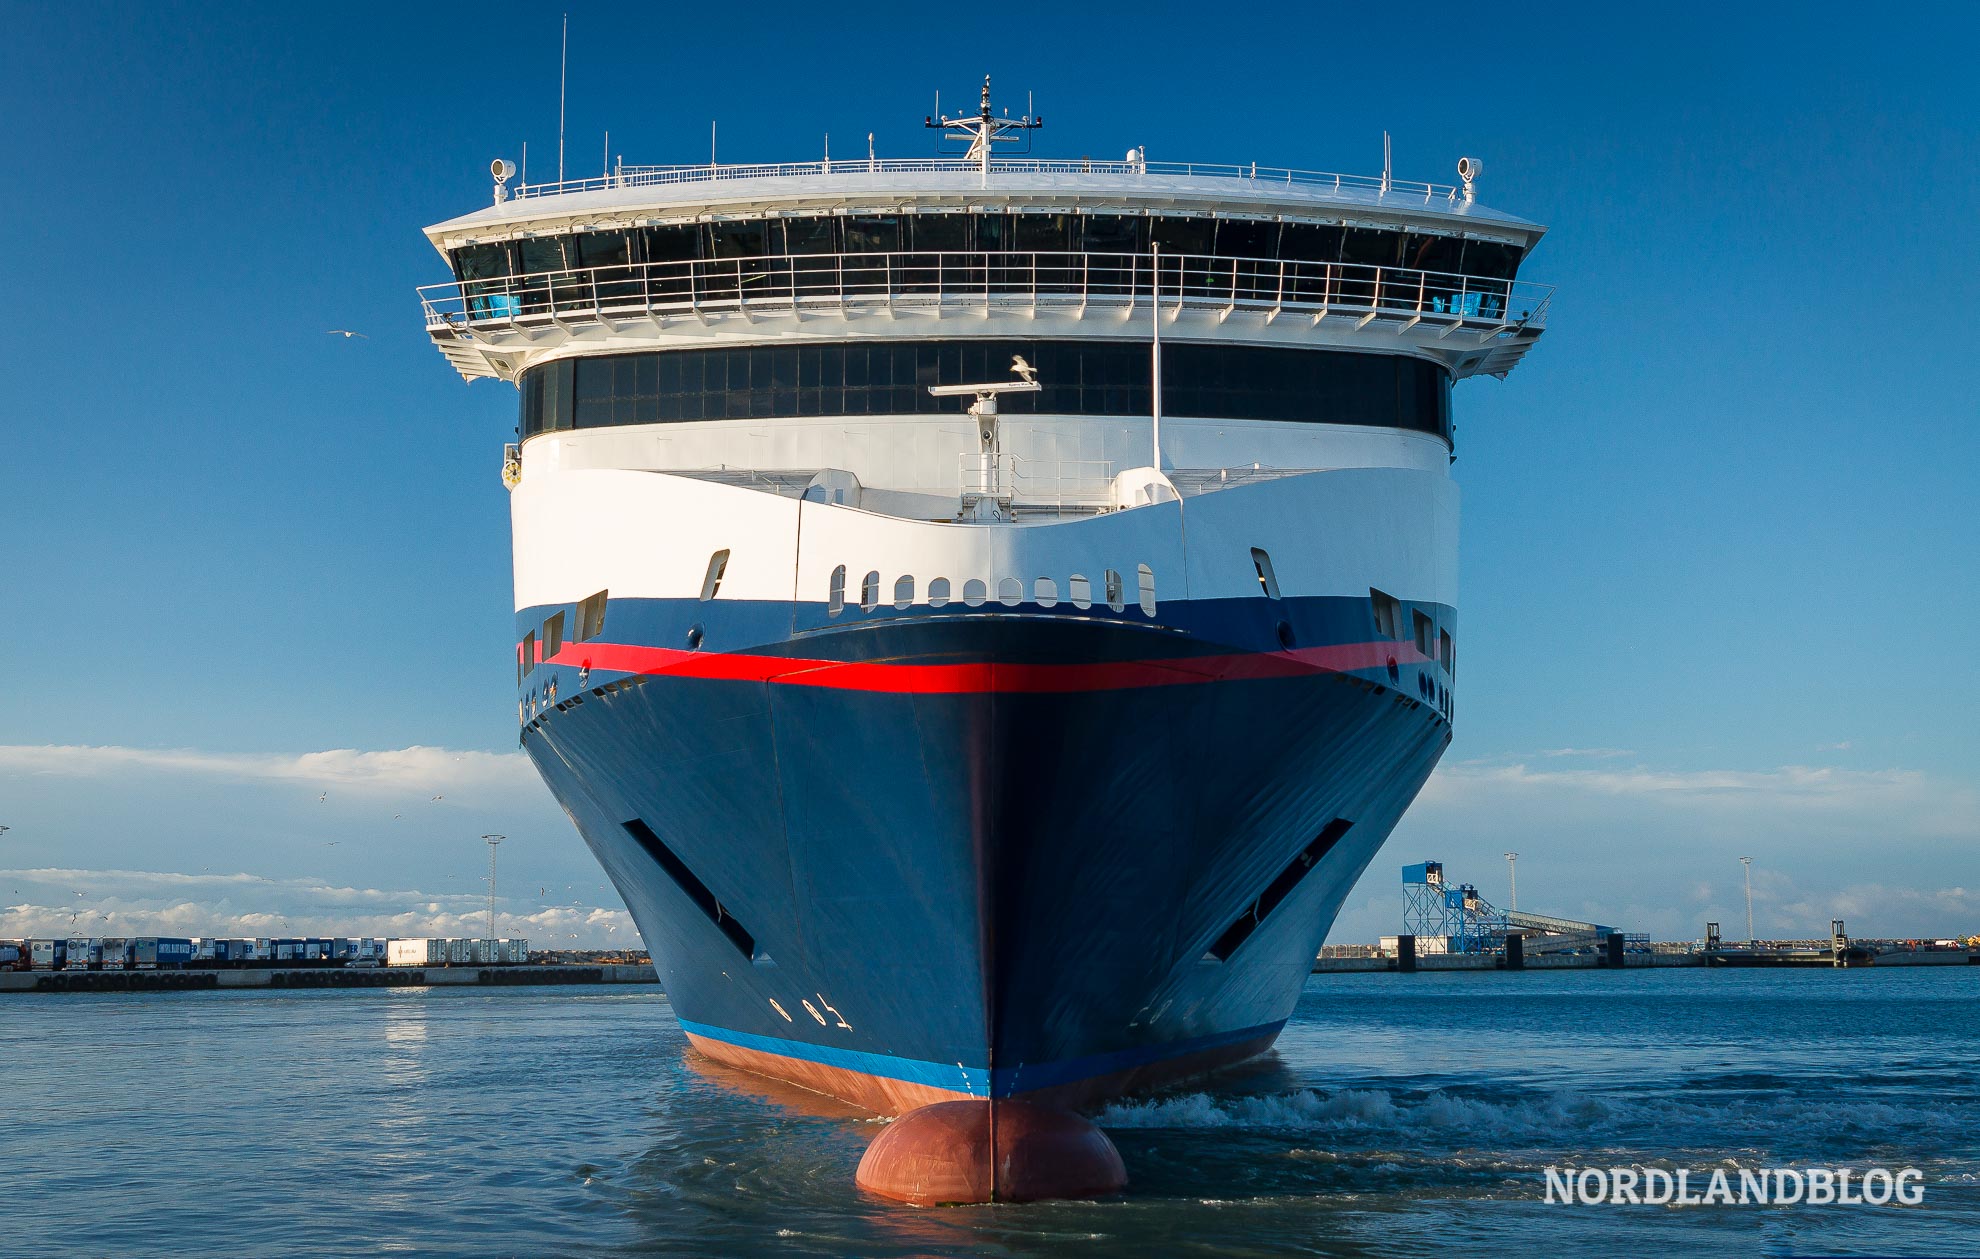 Color Line Fährschiff im Hafen von Dänemark (Anreise nach Norwegen - Nordlandblog)